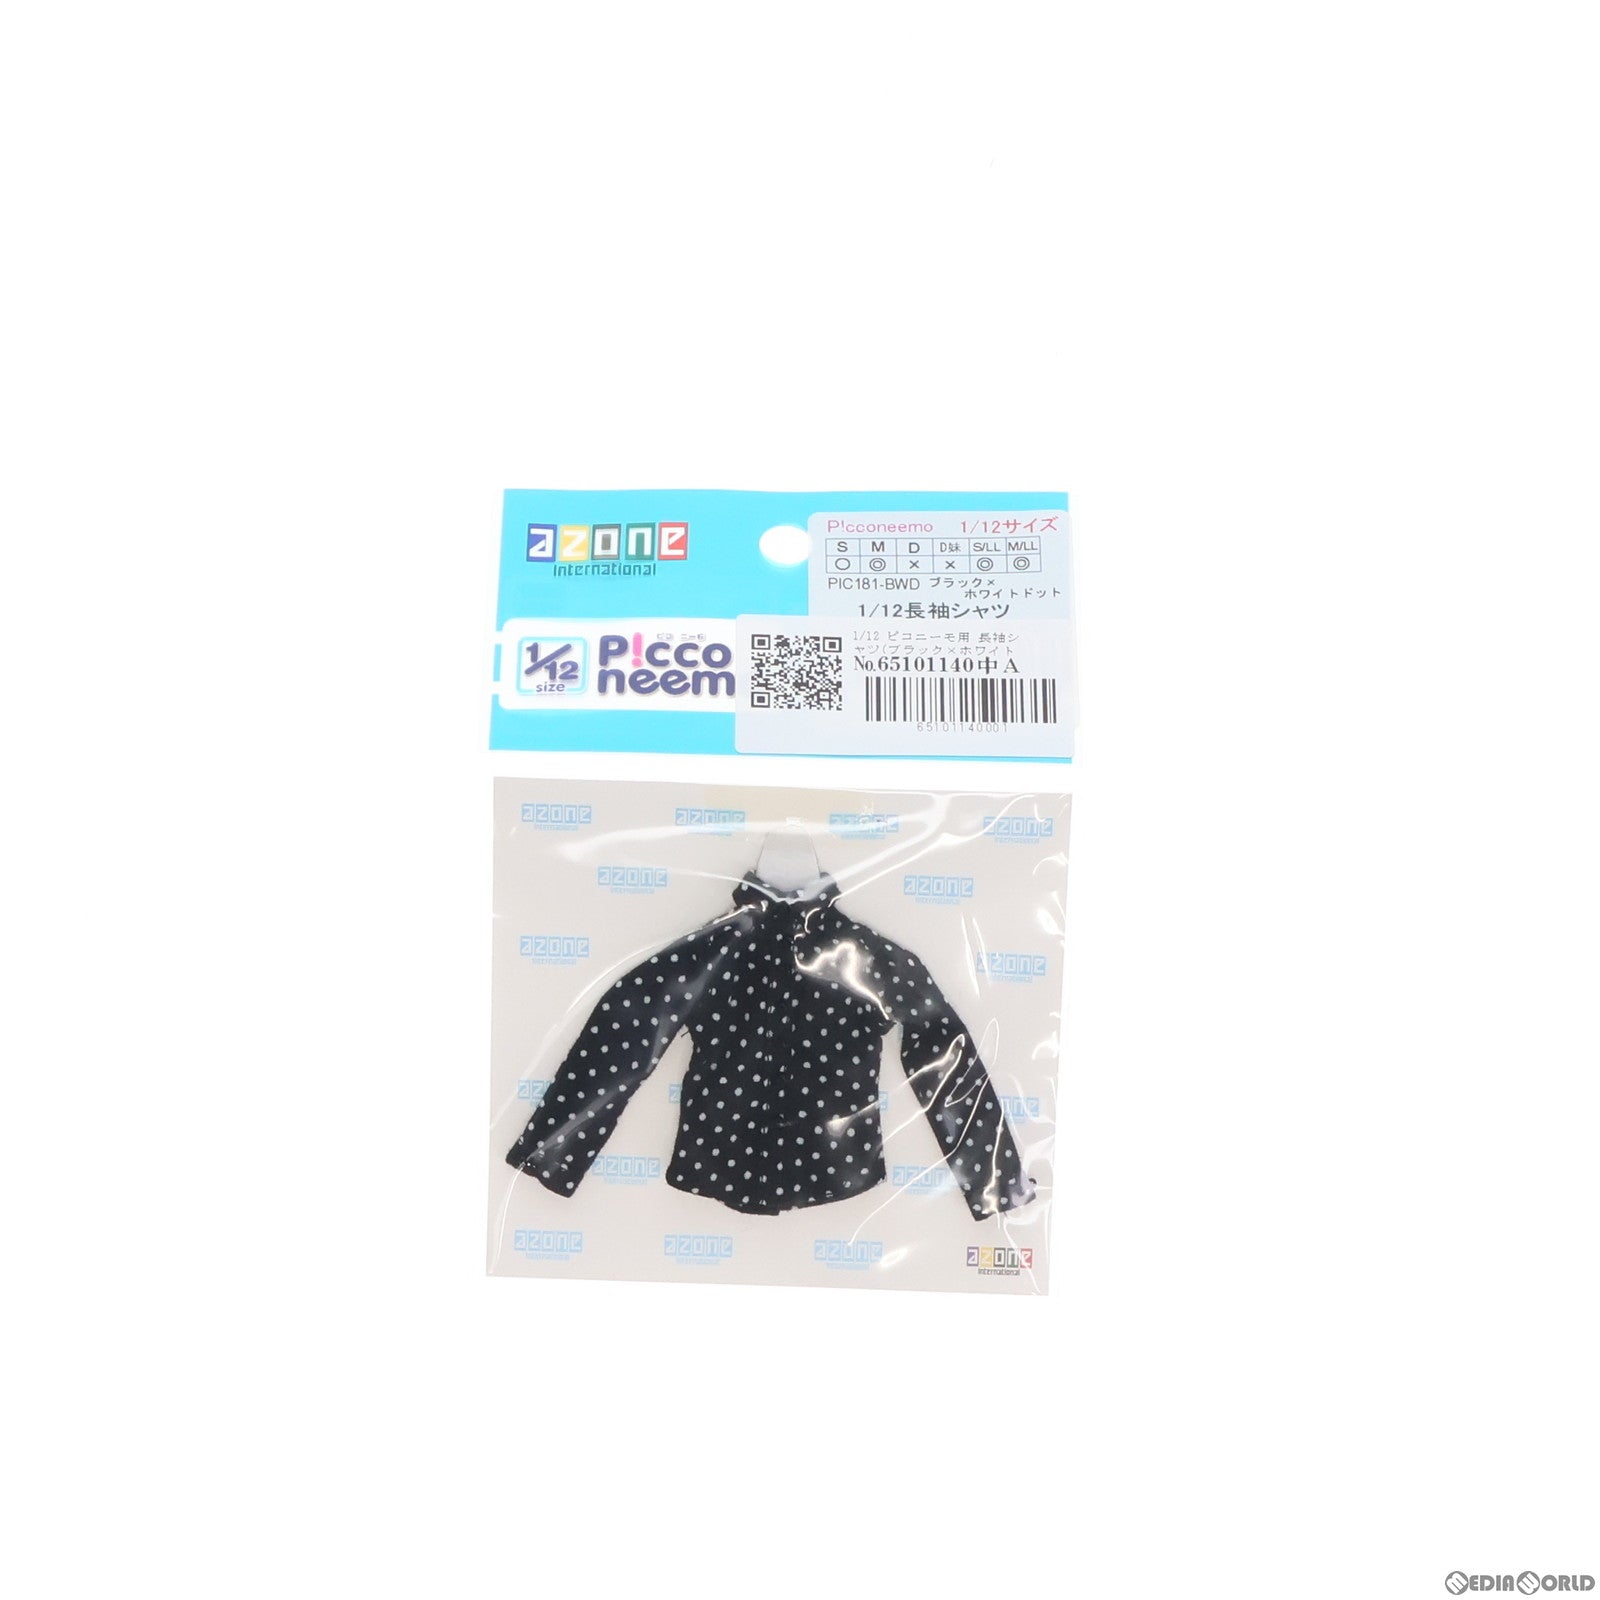 【中古即納】[DOL]ピコニーモ用 長袖シャツ(ブラック×ホワイトドット) 1/12 ドール用衣装(PIC181-BWD) アゾン(20171128)